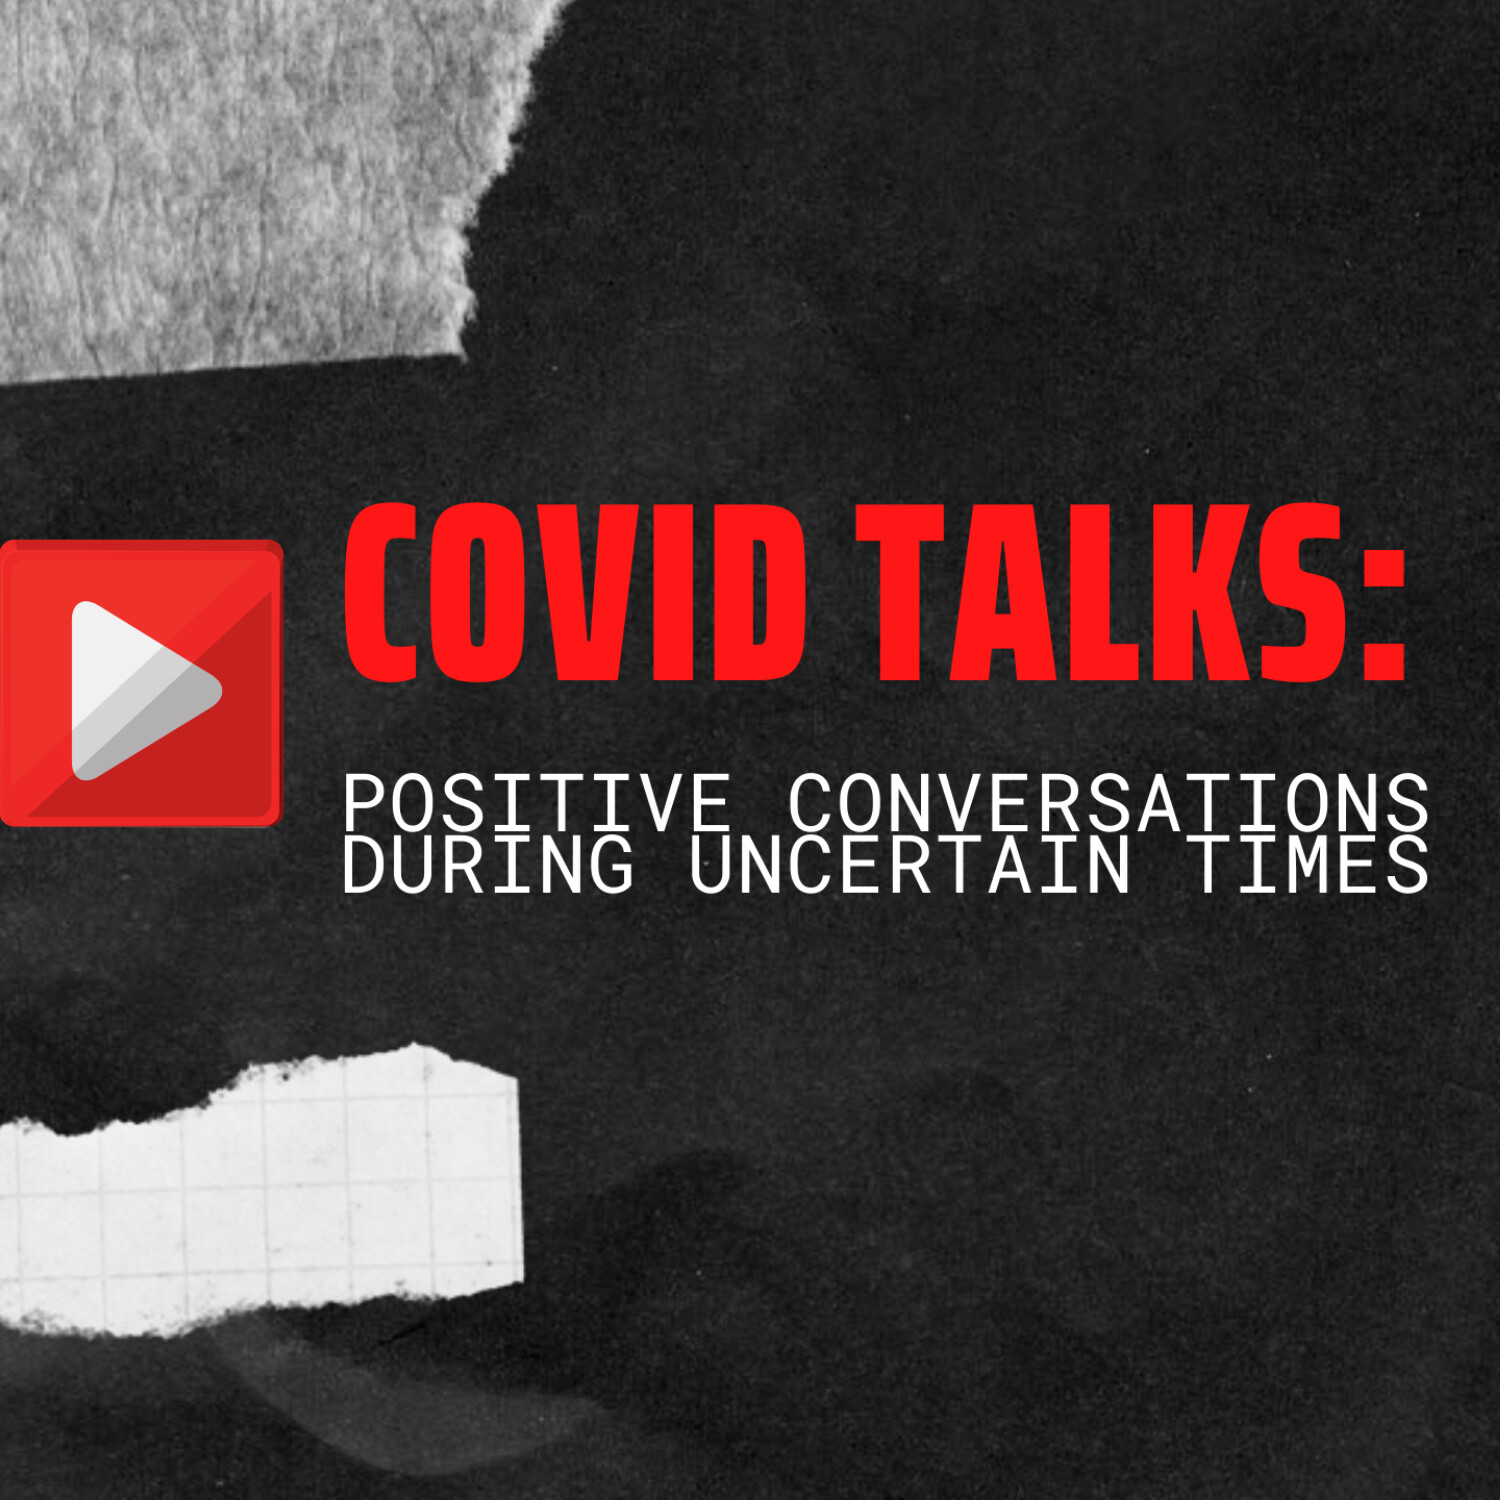 COVID talks